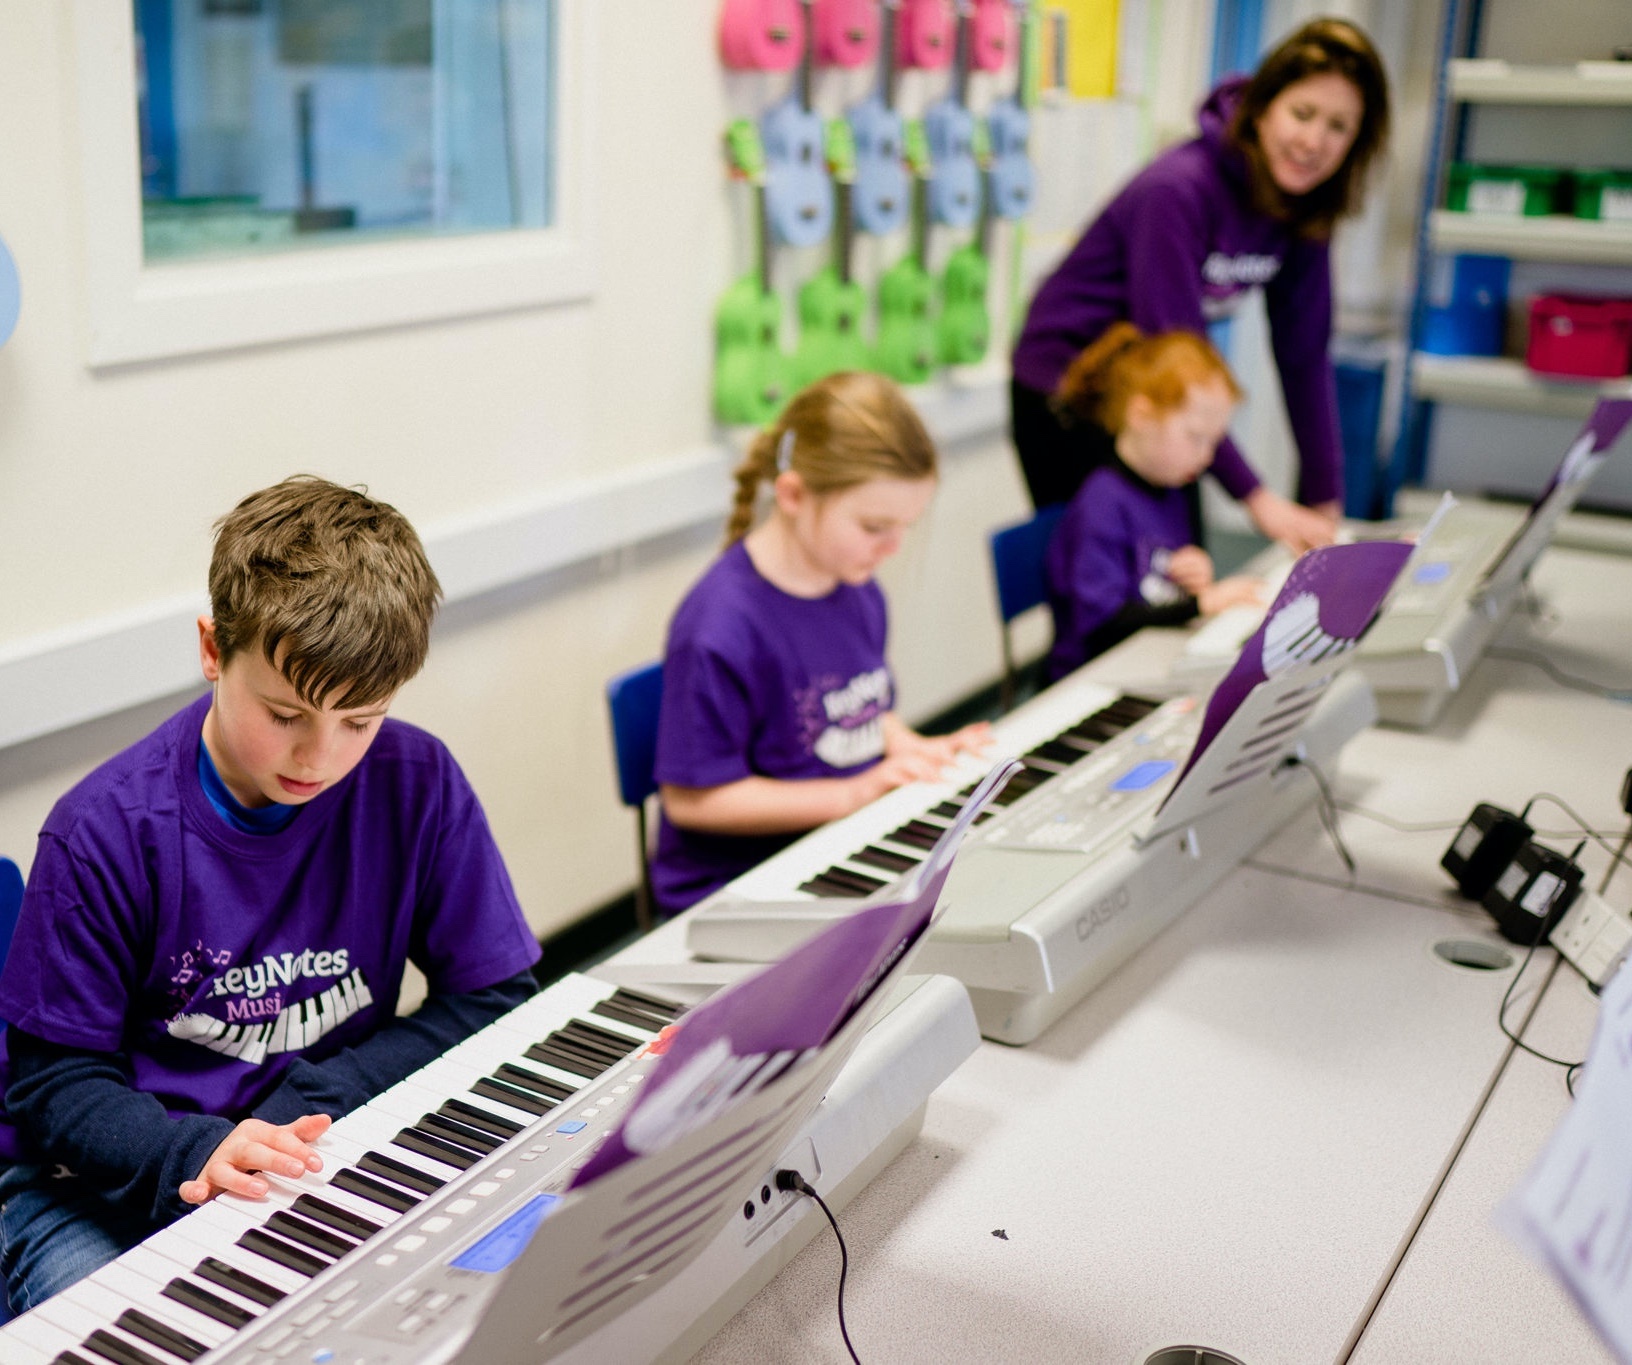 Trẻ em học chơi đàn piano hiệu quả nhất là khi đến trung tâm nếu có nhiều thời gian rảnh và kiên nhẫn